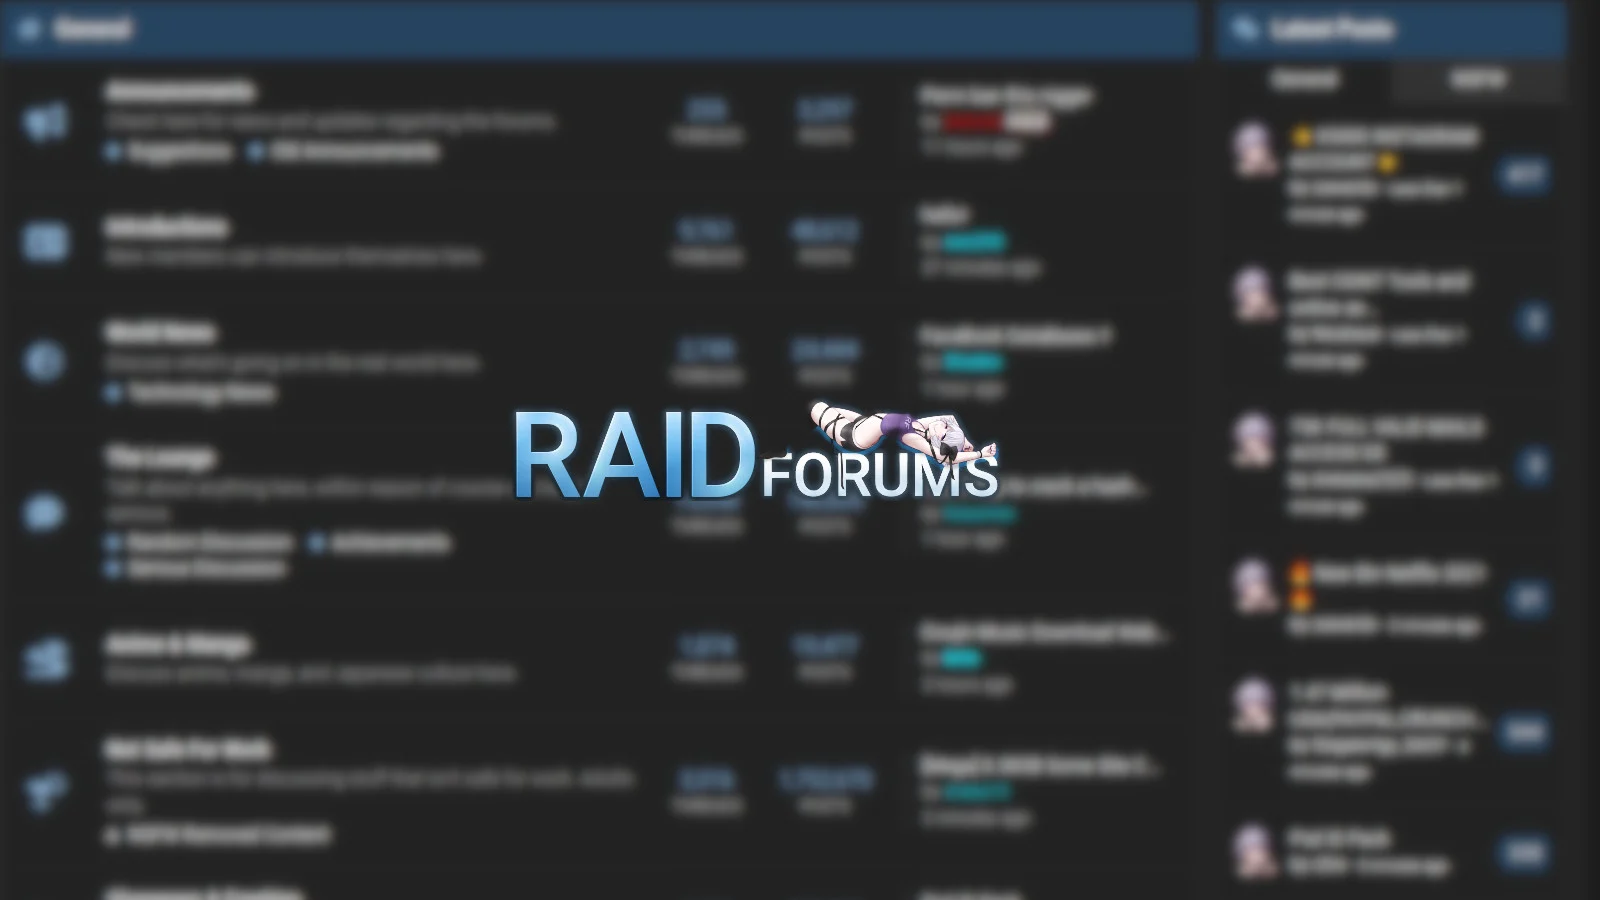 RaidForums members leaked